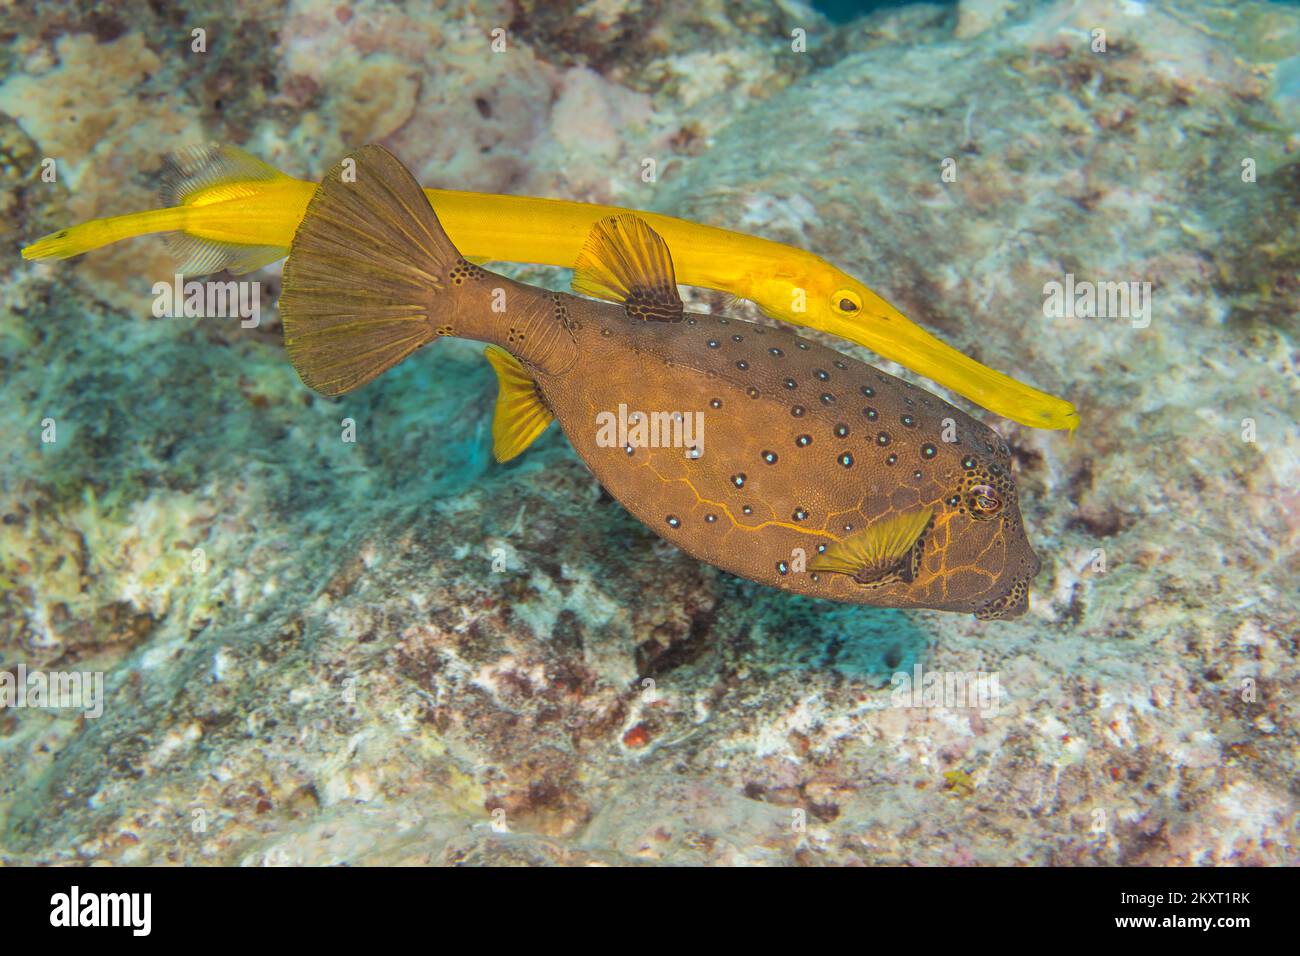 Diese trompetenfische, Aulostomus maculatus, ein Riff predator Schwimmen ist hinter einem gelben Kofferfisch, Ostracion cubicus, es als Blinde Beute aufzulauern, Ya Stockfoto